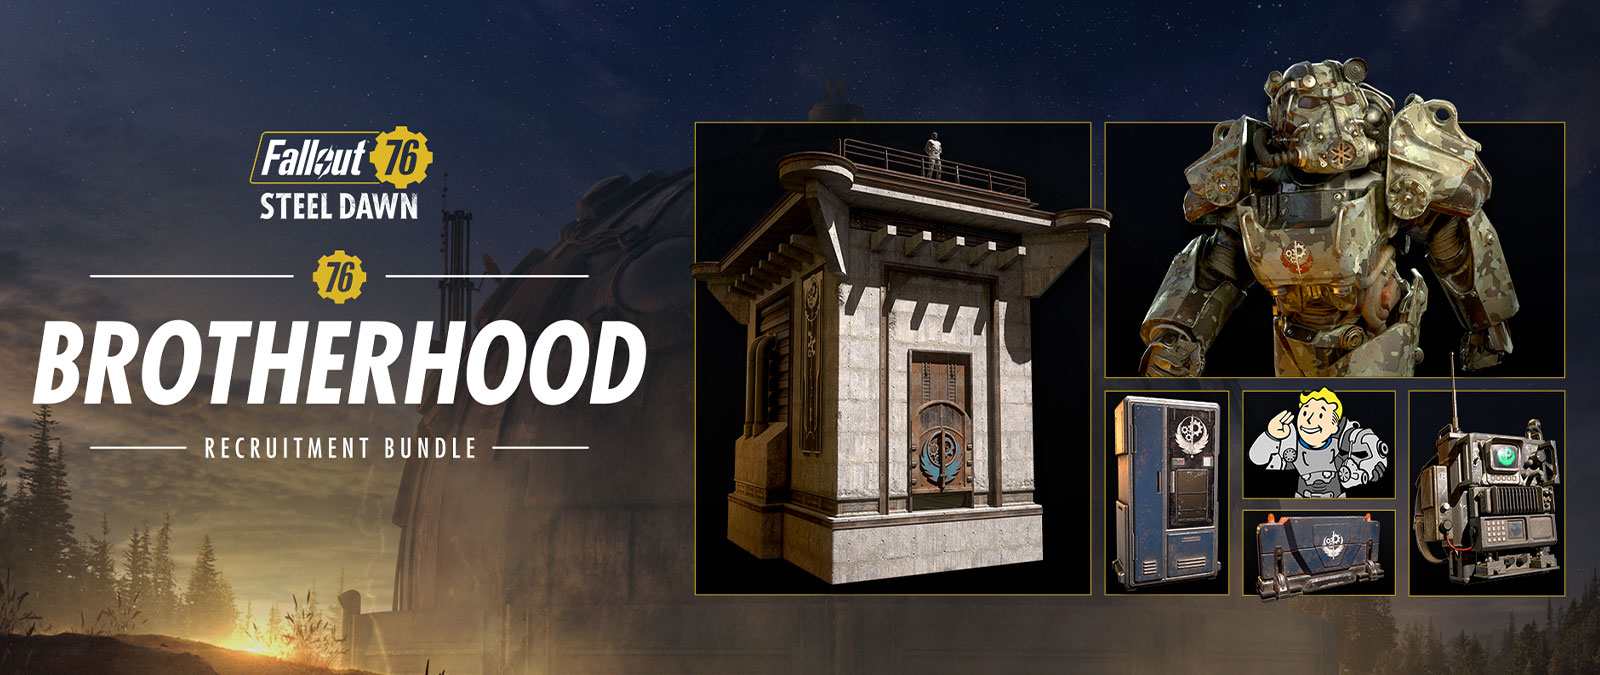 Fallout 76 Steel Dawn Brotherhood Recruitment Paketi, Power Armor, gözetleme kulesi ve diğer eşyalar